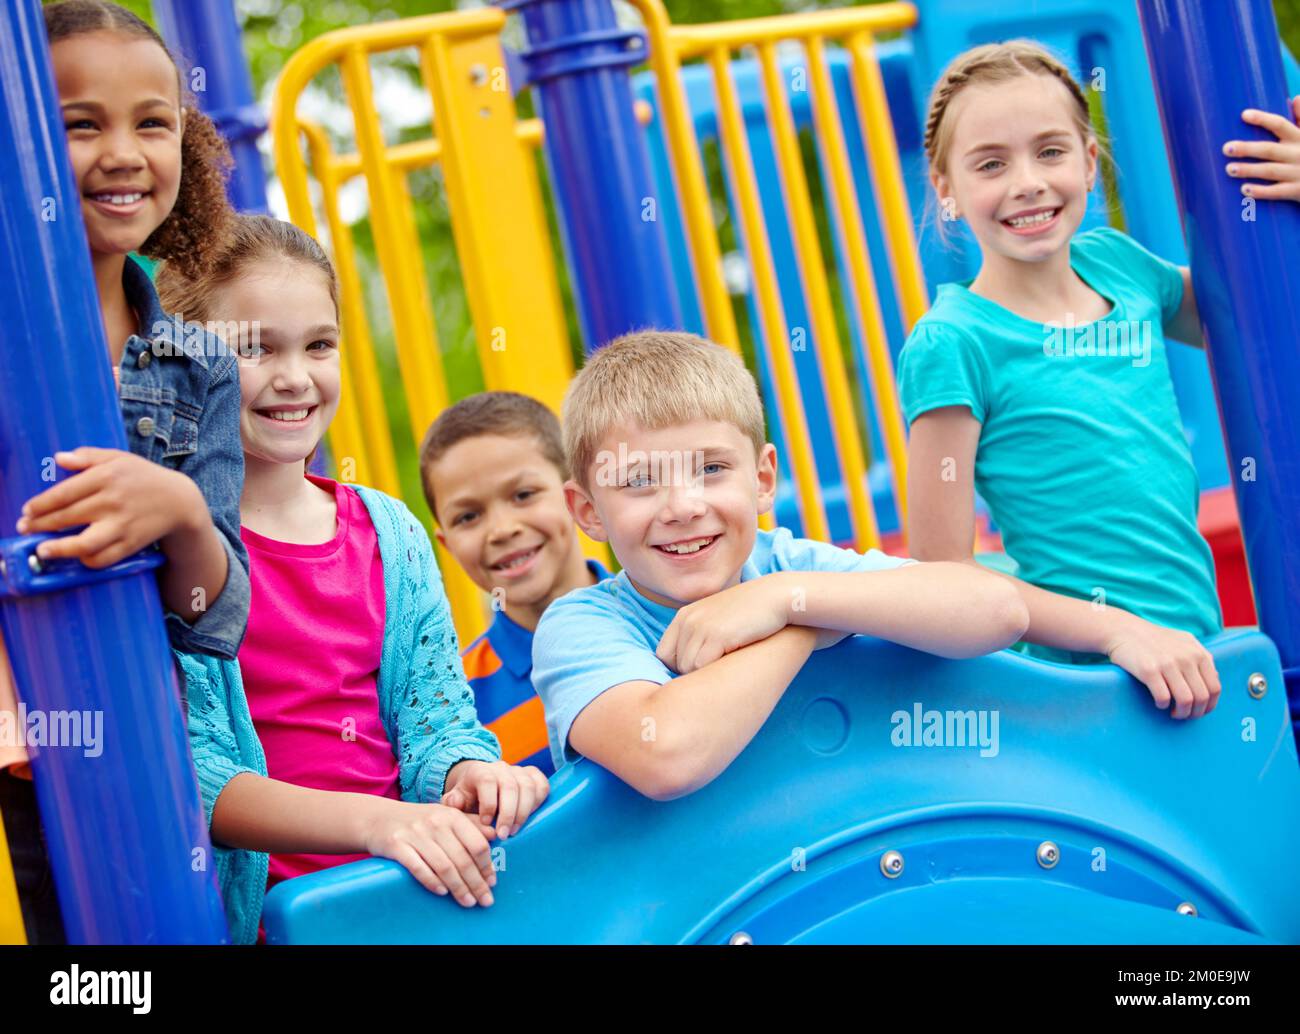 Theyre un gruppo di amici a maglia stretta. Un gruppo multietnico di bambini felici che giocano in una palestra nella giungla in un parco giochi. Foto Stock